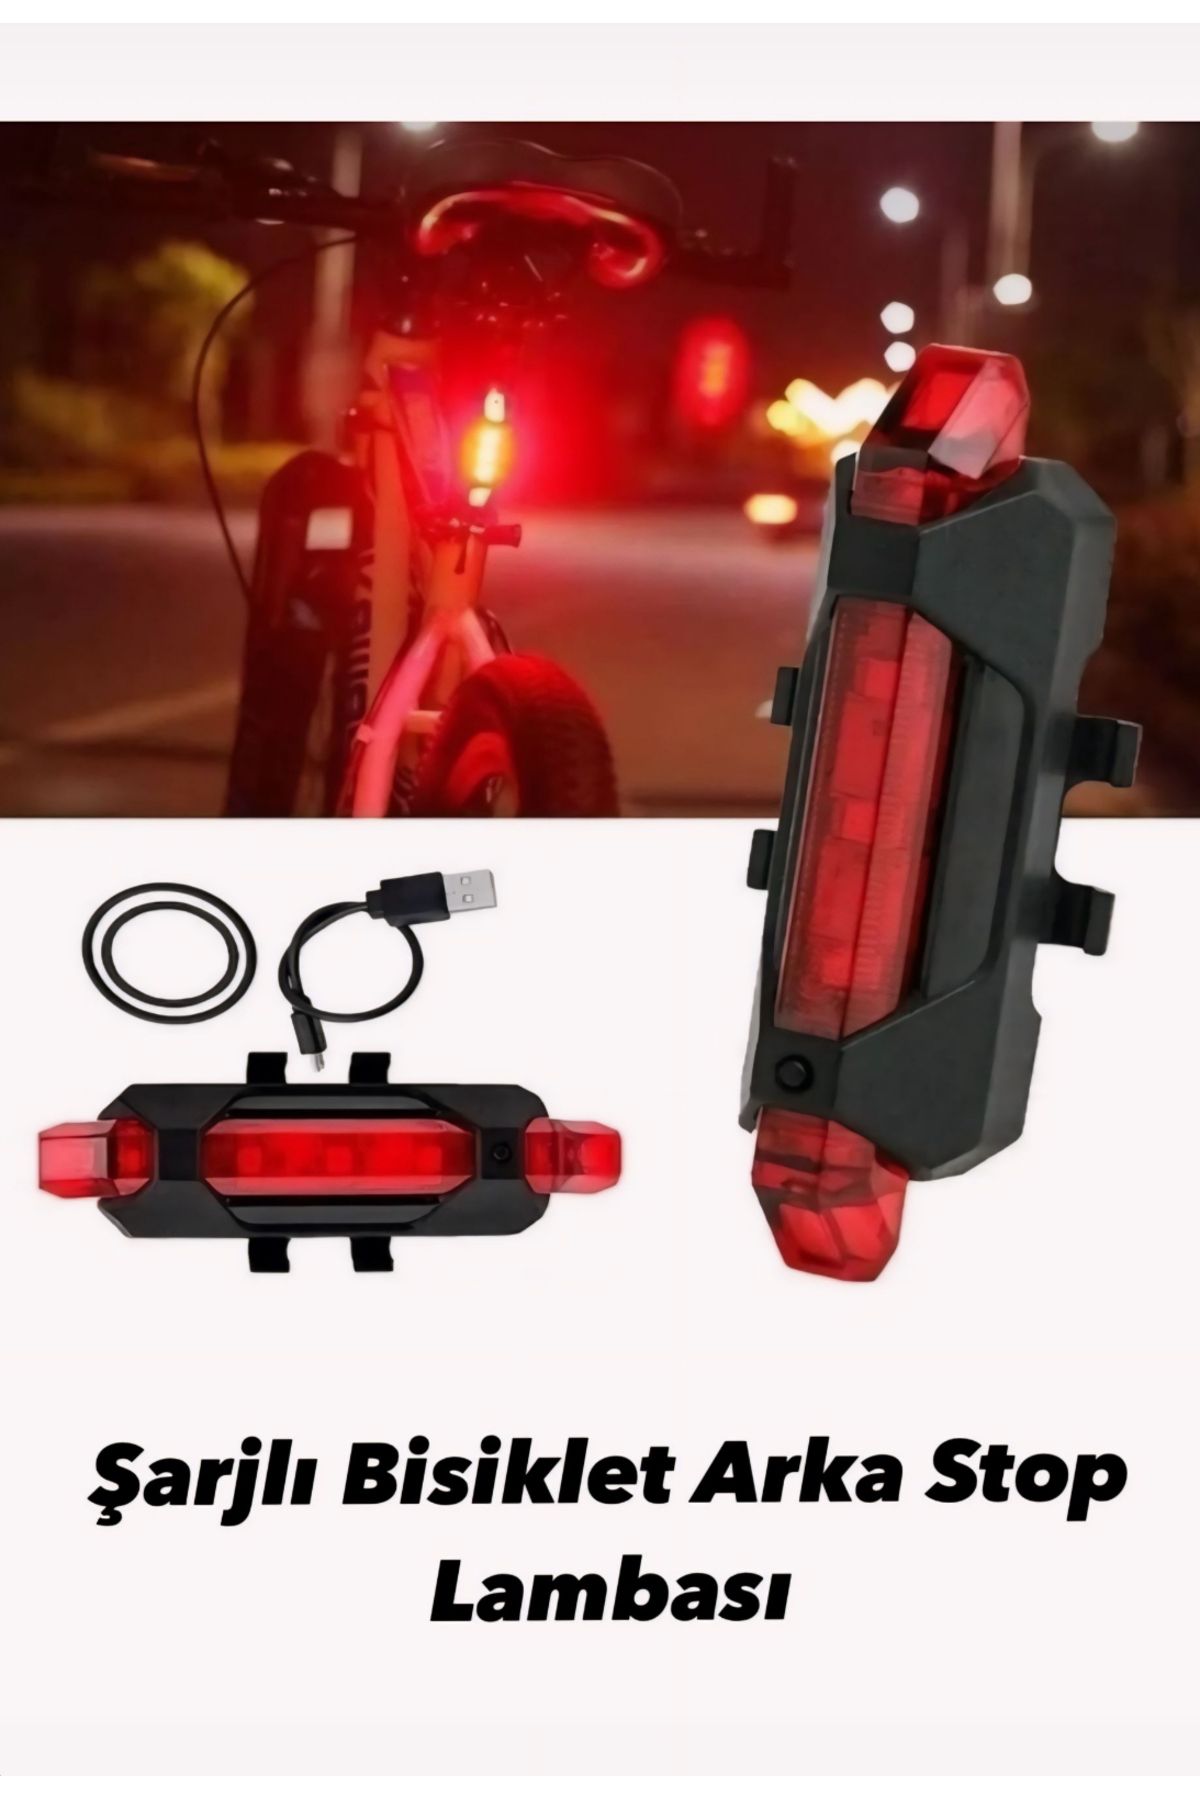 Mi-ÇA HOME Bisiklet Arka Stop Uyarı Lambası/Usb Şarjlı 4 Modlu Fonksiyonel Uyarı Ikaz Işığı Çakar Lambası